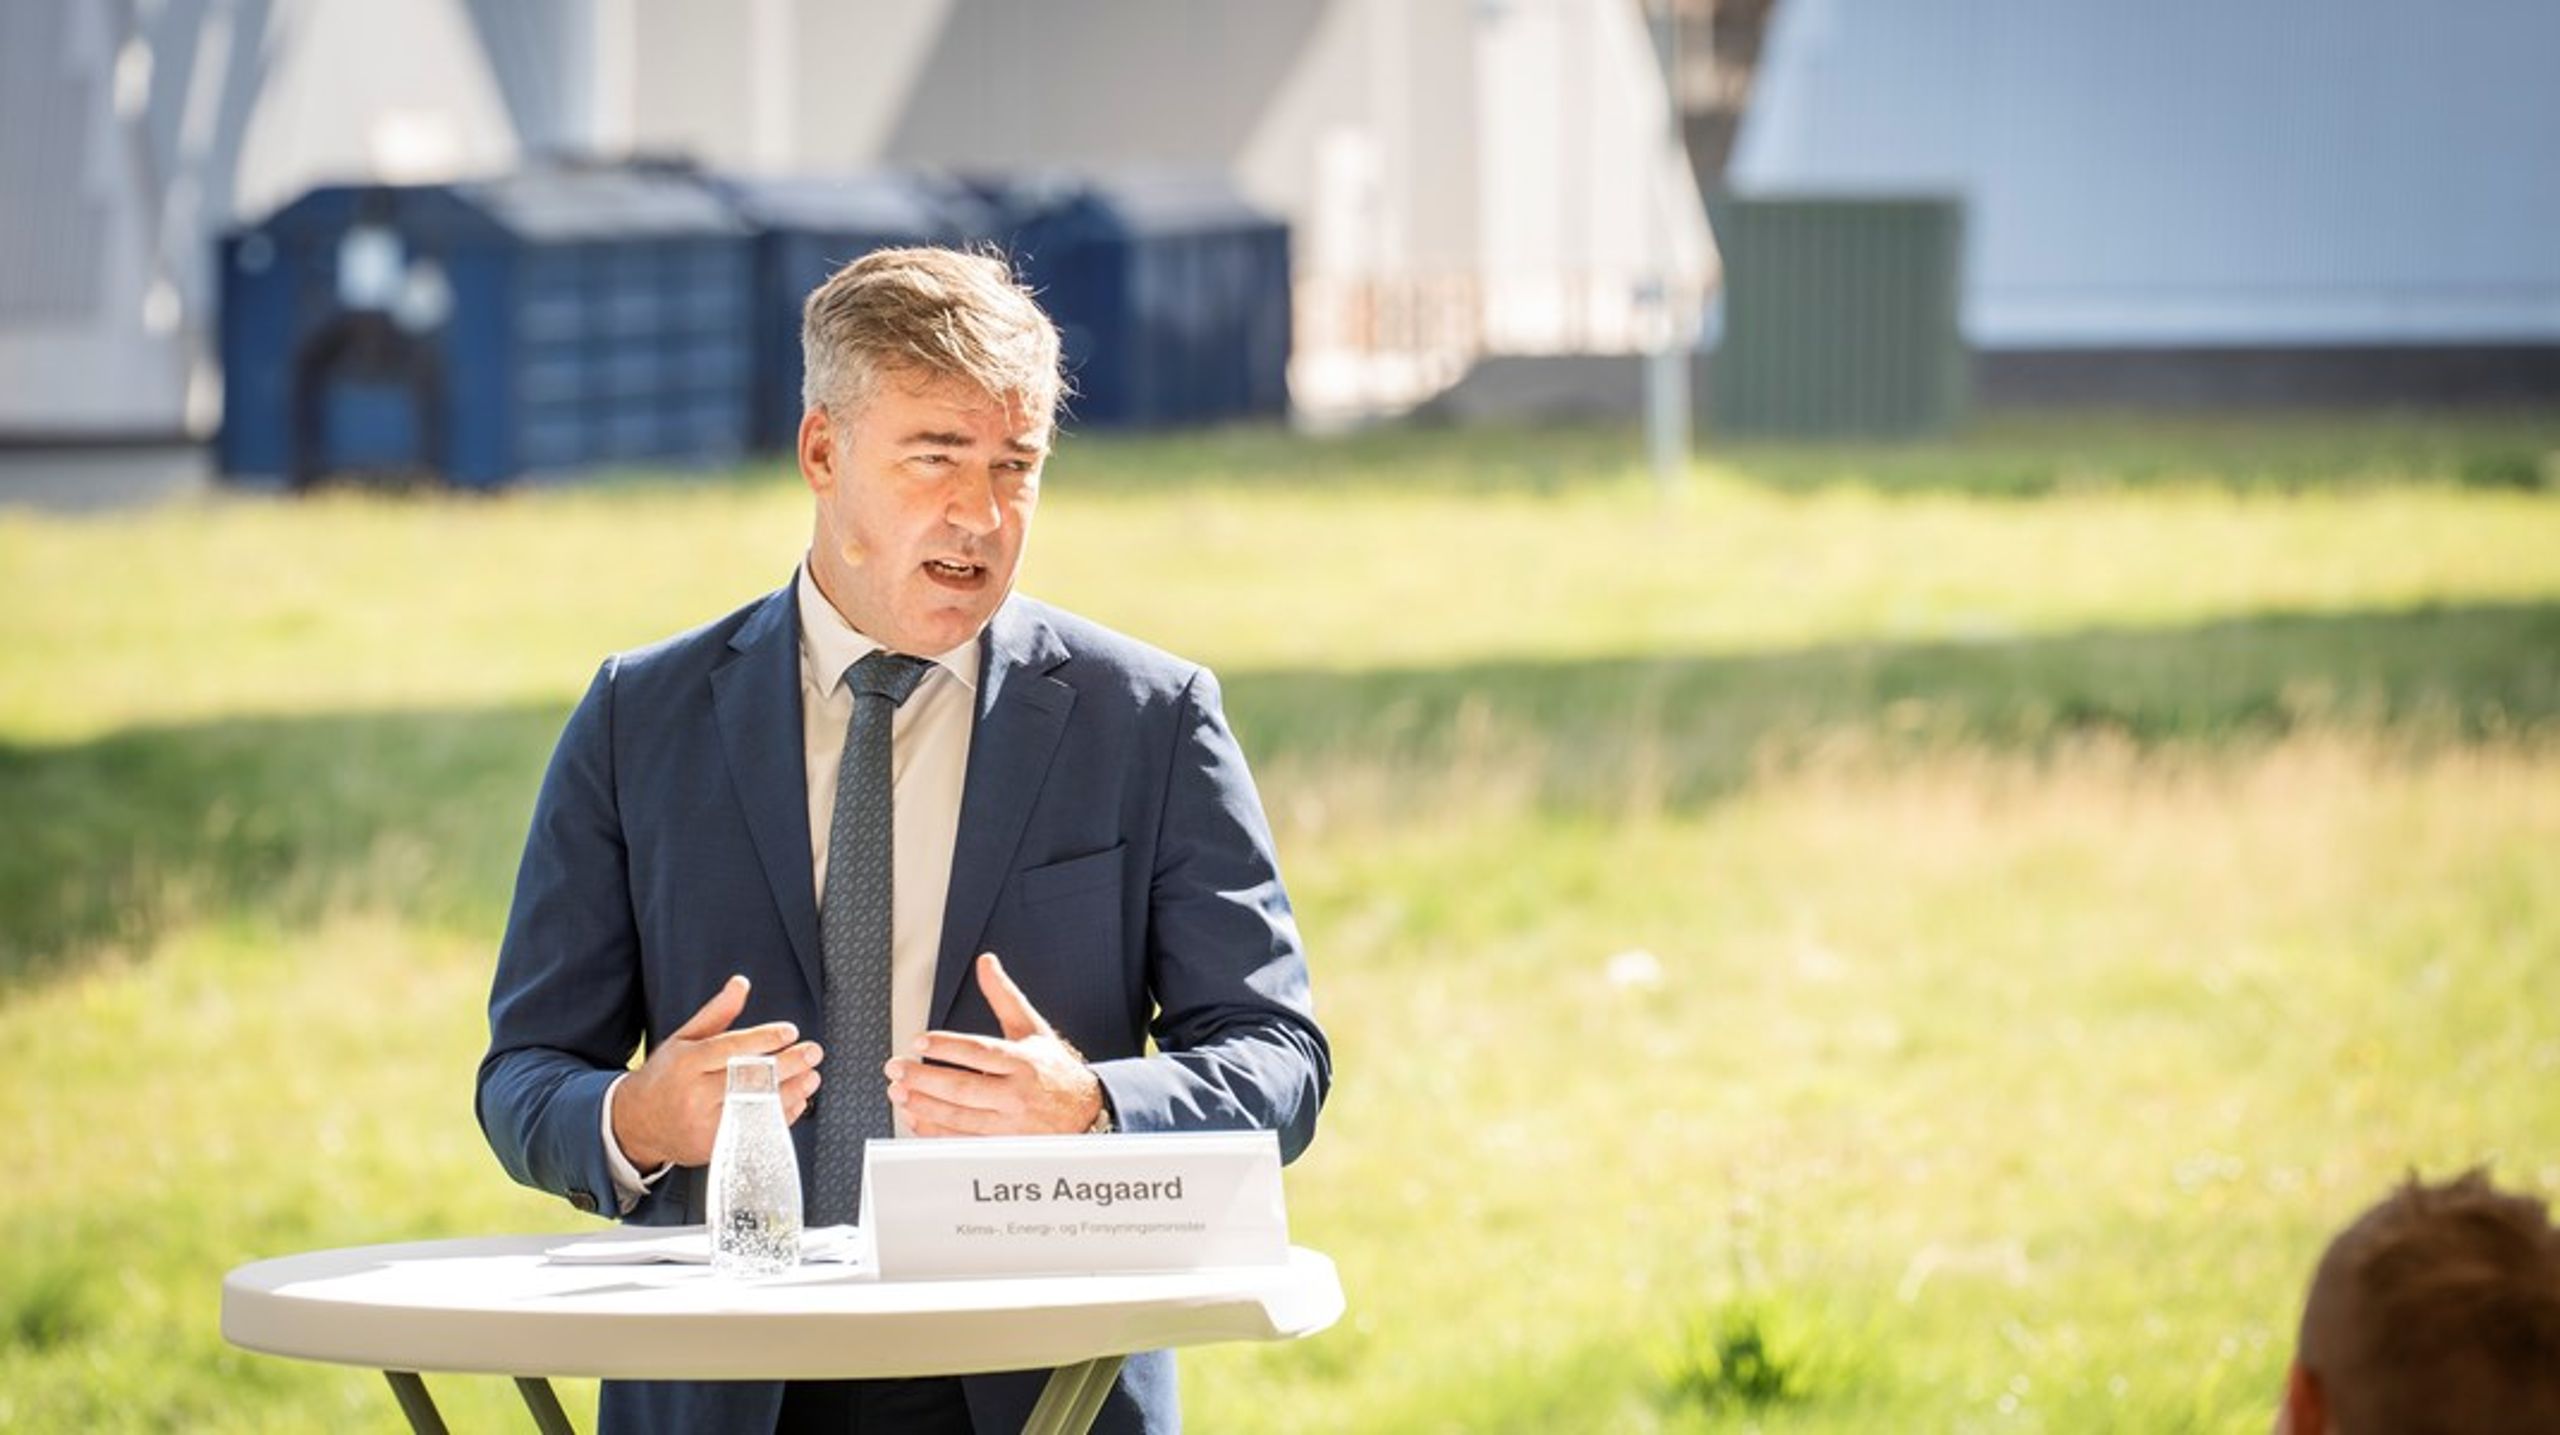 Klimaminister Lars
Aagaard udtalte for nylig, at vi skal have en klimapolitik, som 80 procent af danskerne kan se sig i. 

Det er
faldet mange for brystet, men der er en sandhed i det, Lars Aagaard siger, skriver&nbsp;Per Paludan Hansen.<br><br><br>